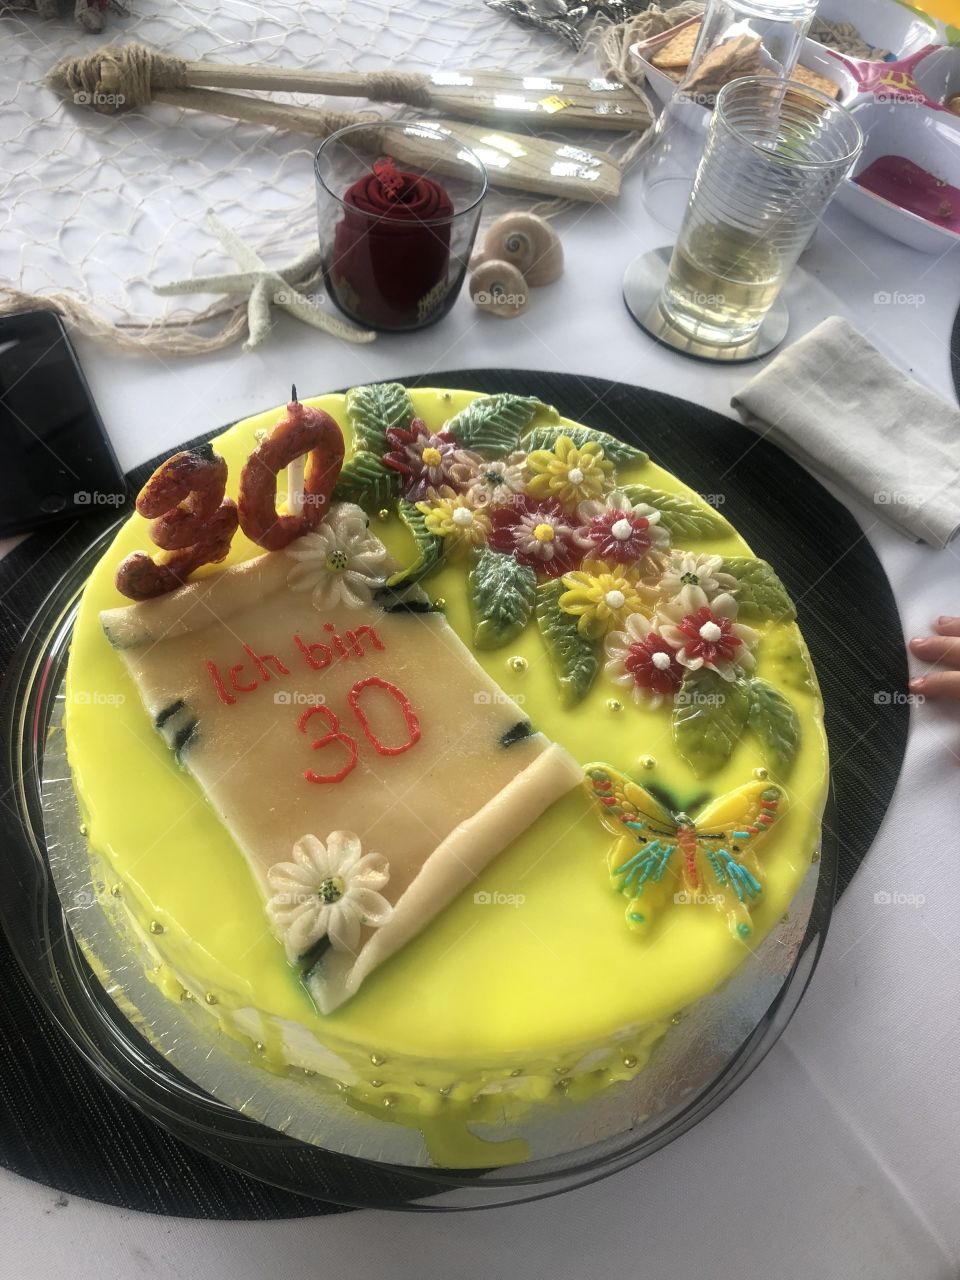 Torte zum 30 Geburtstags 